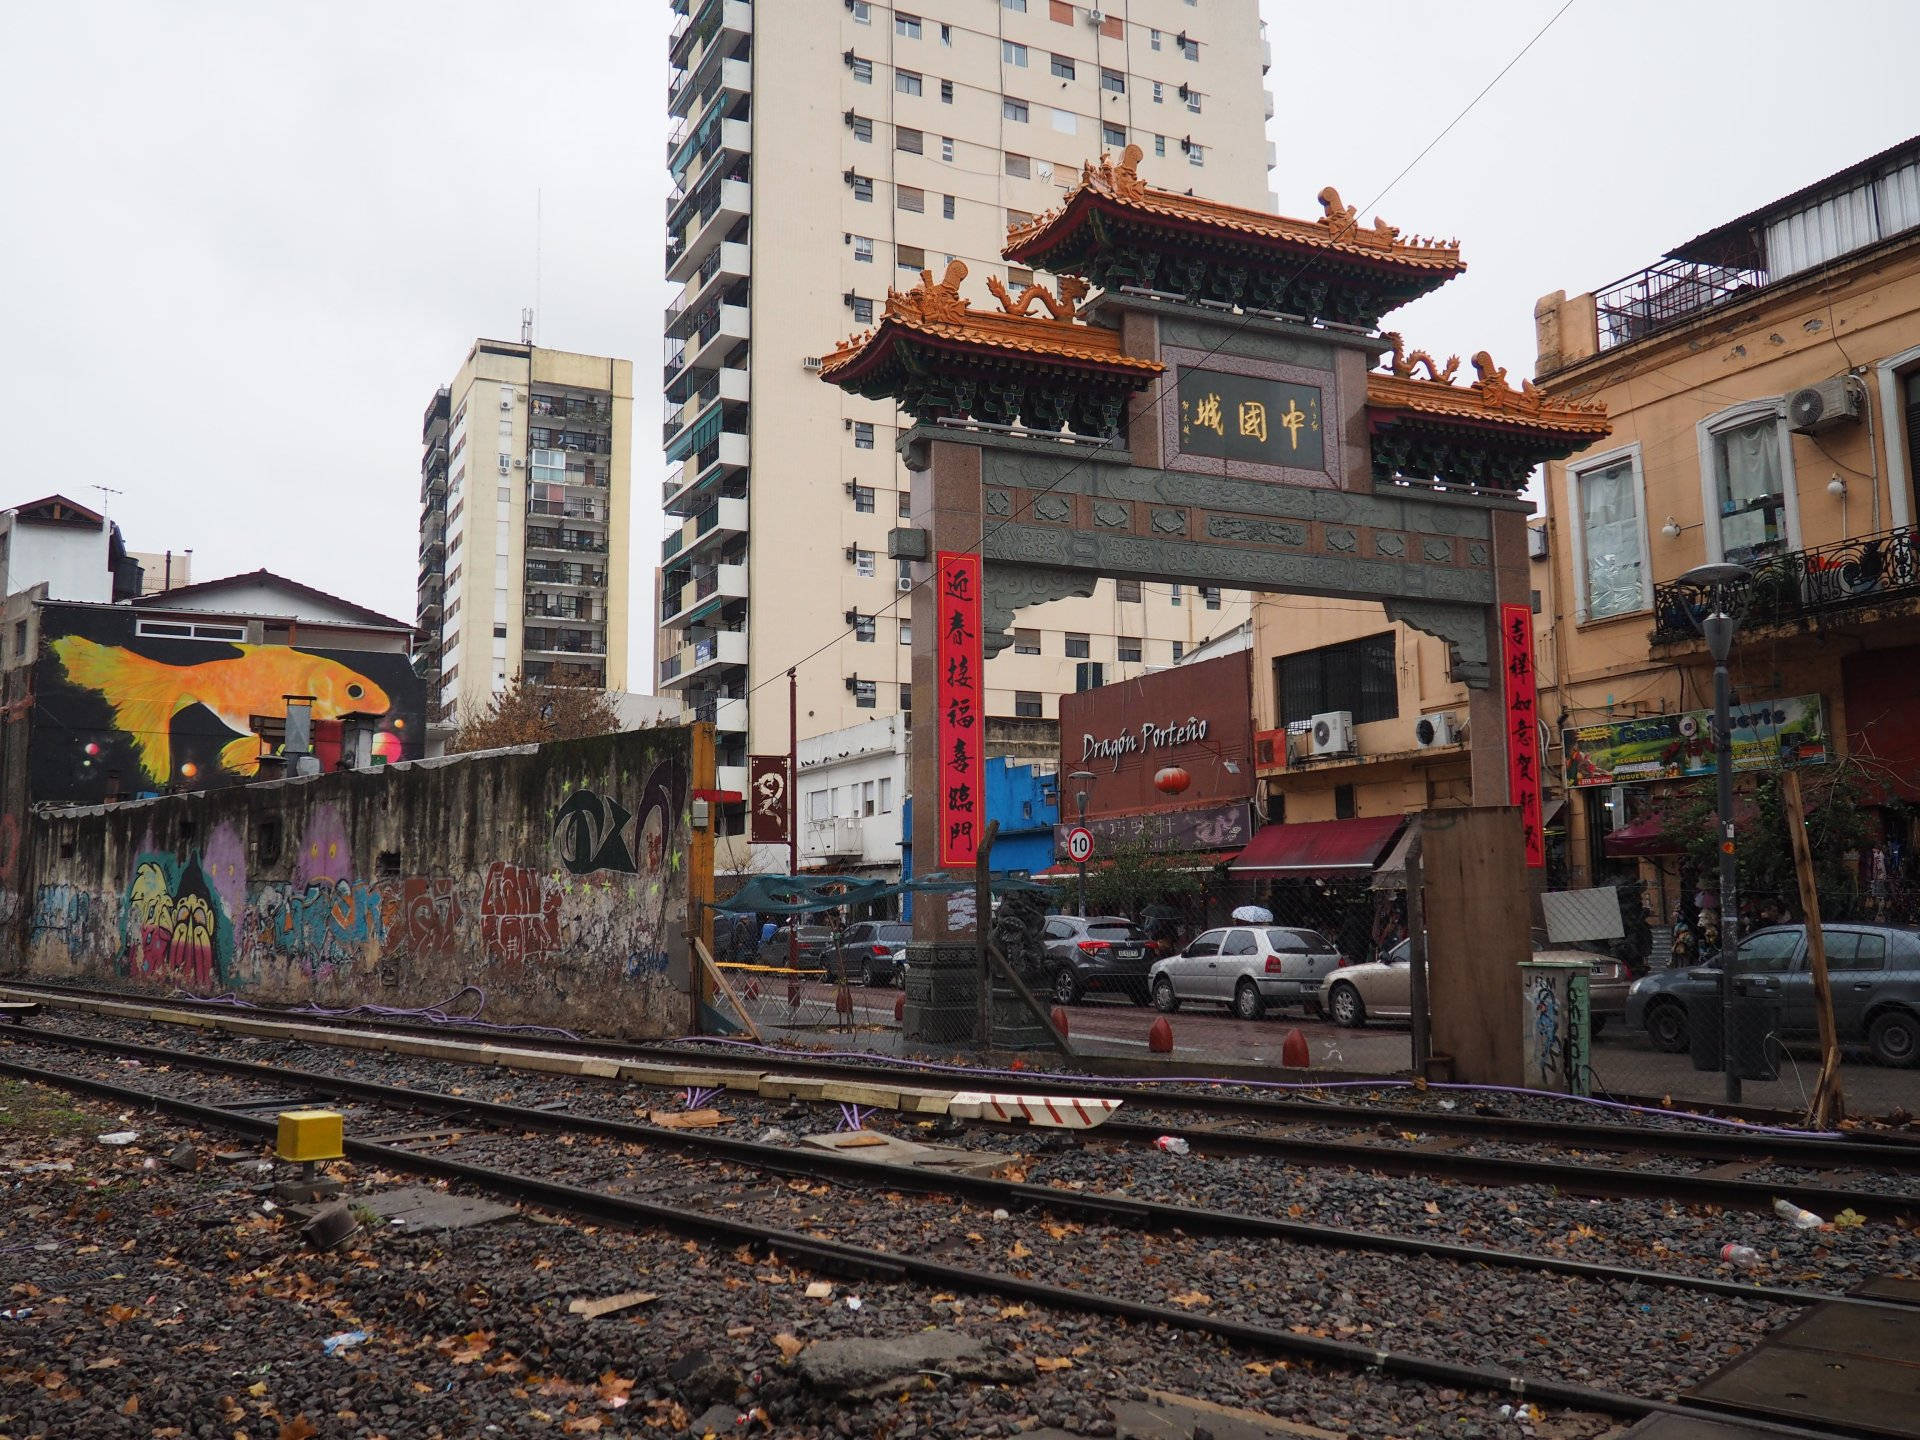 Buenos Aires Chinatown Ved siden af jernbaner Regninger Wallpaper